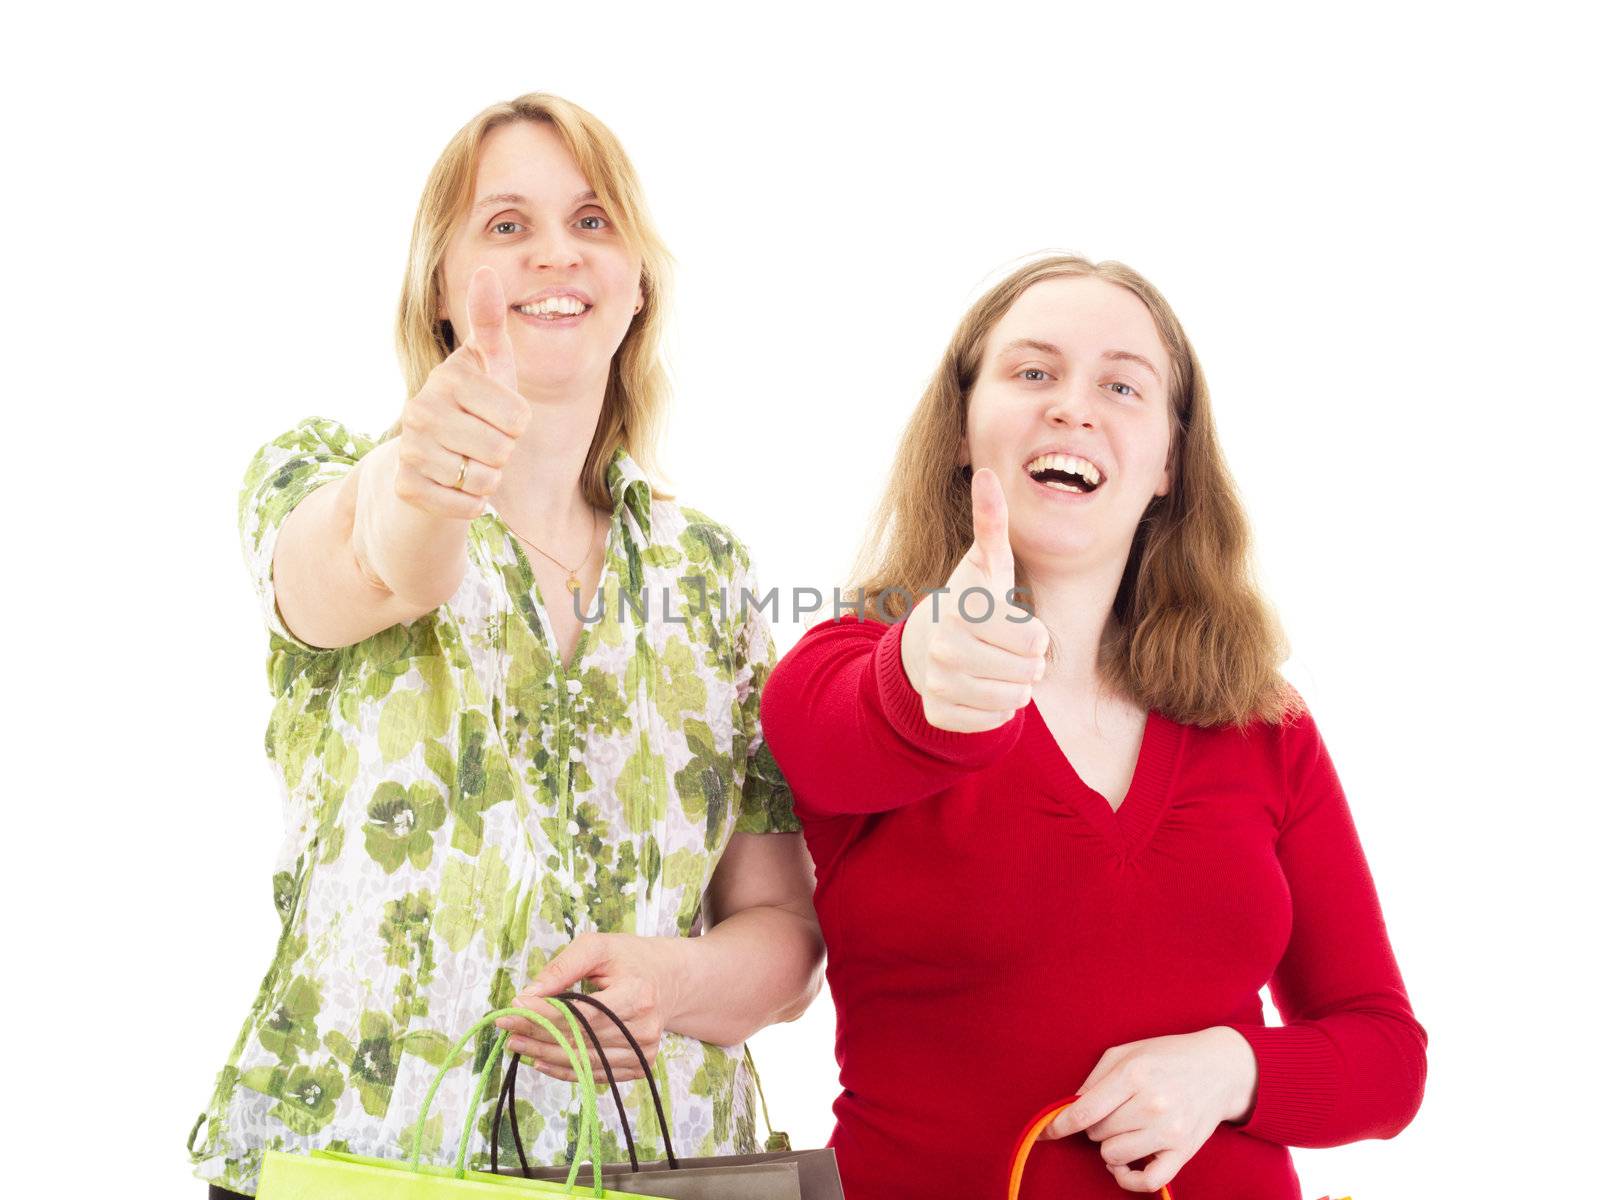 Two women on shopping tour